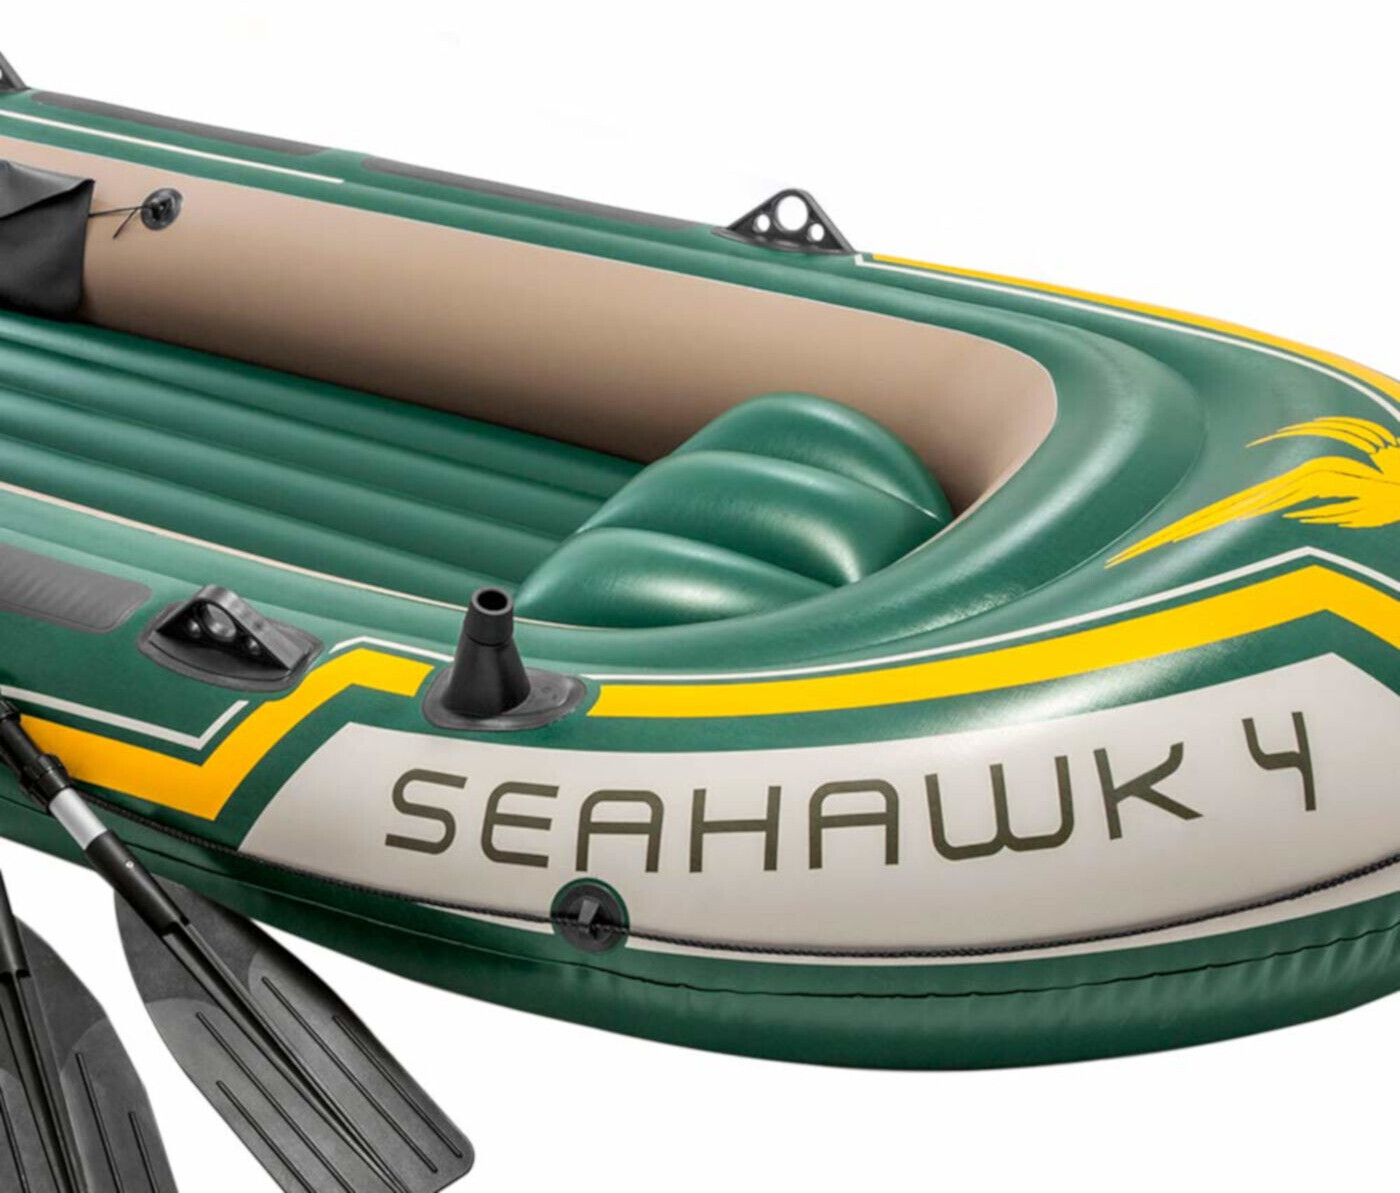 Intex Seahawk 4 ab 96,10 €  Preisvergleich bei